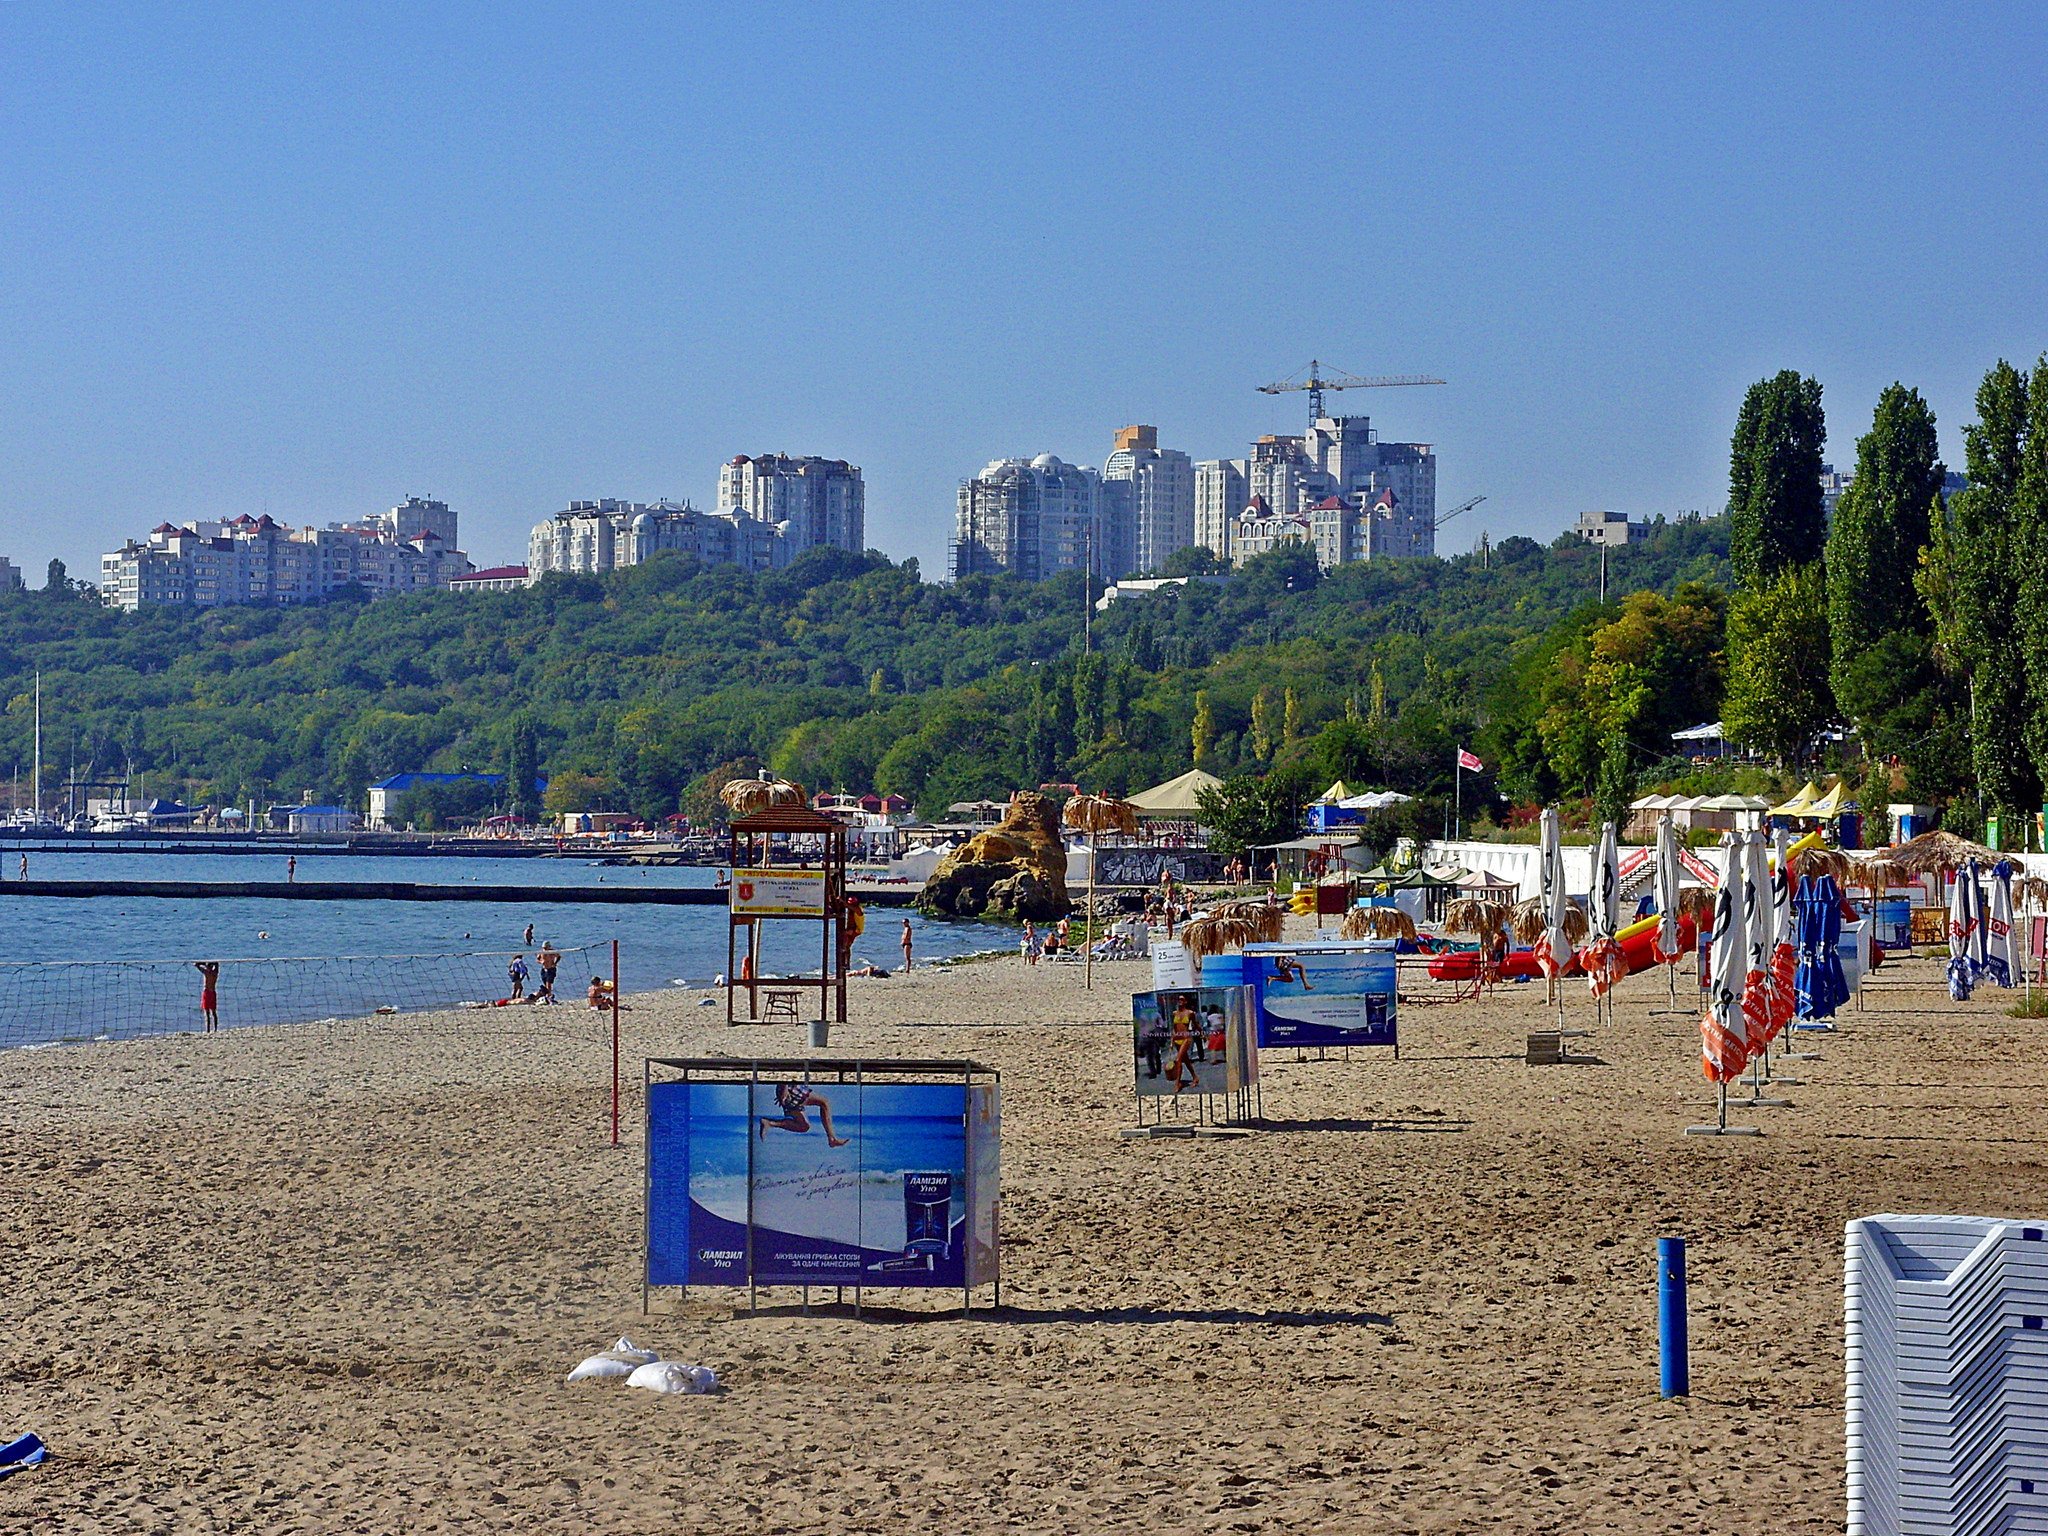 Odessa beach. Image: Grzegorz Kozakiewicz